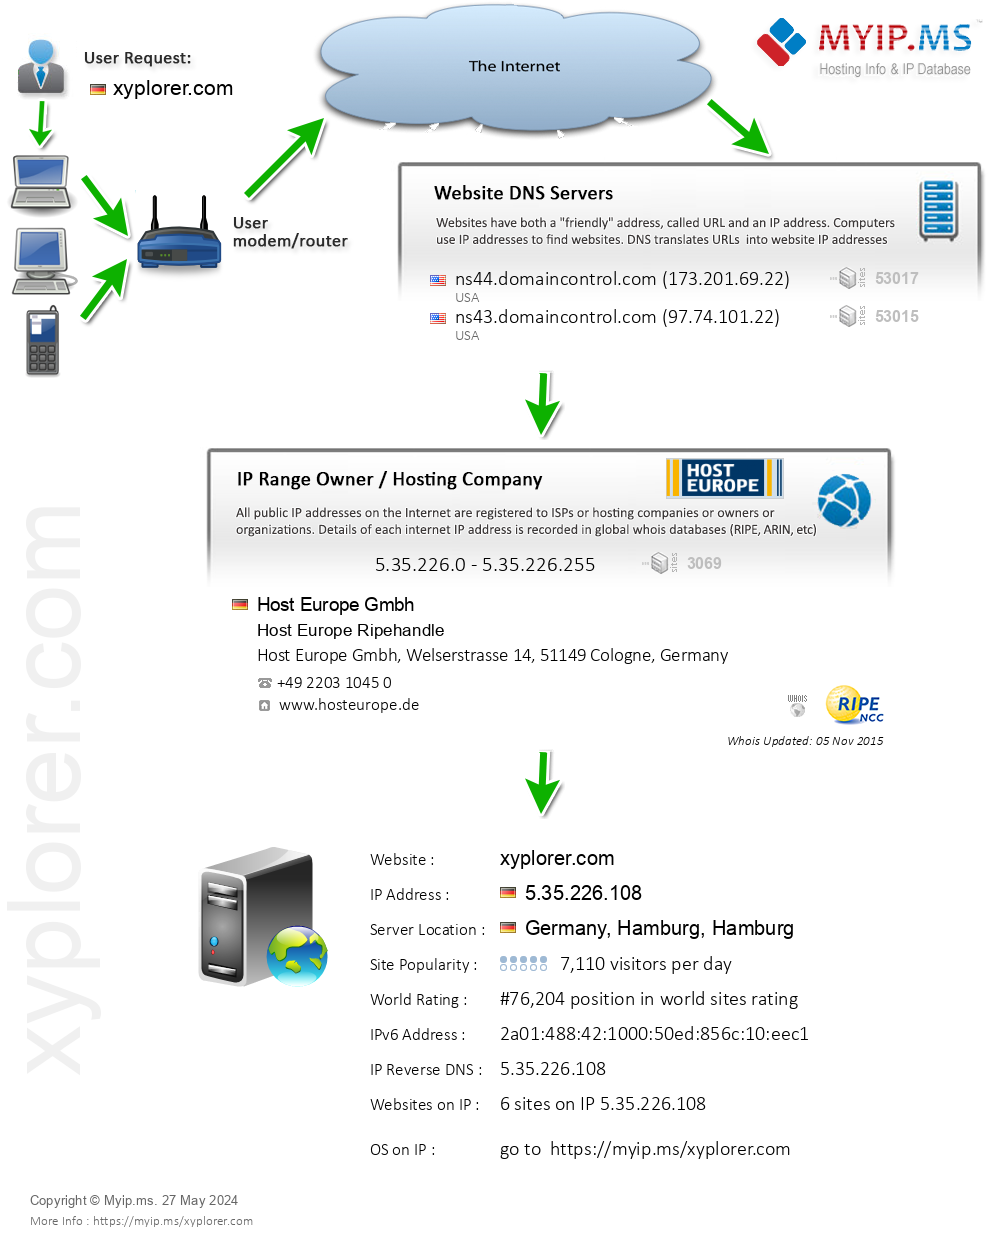 Xyplorer.com - Website Hosting Visual IP Diagram